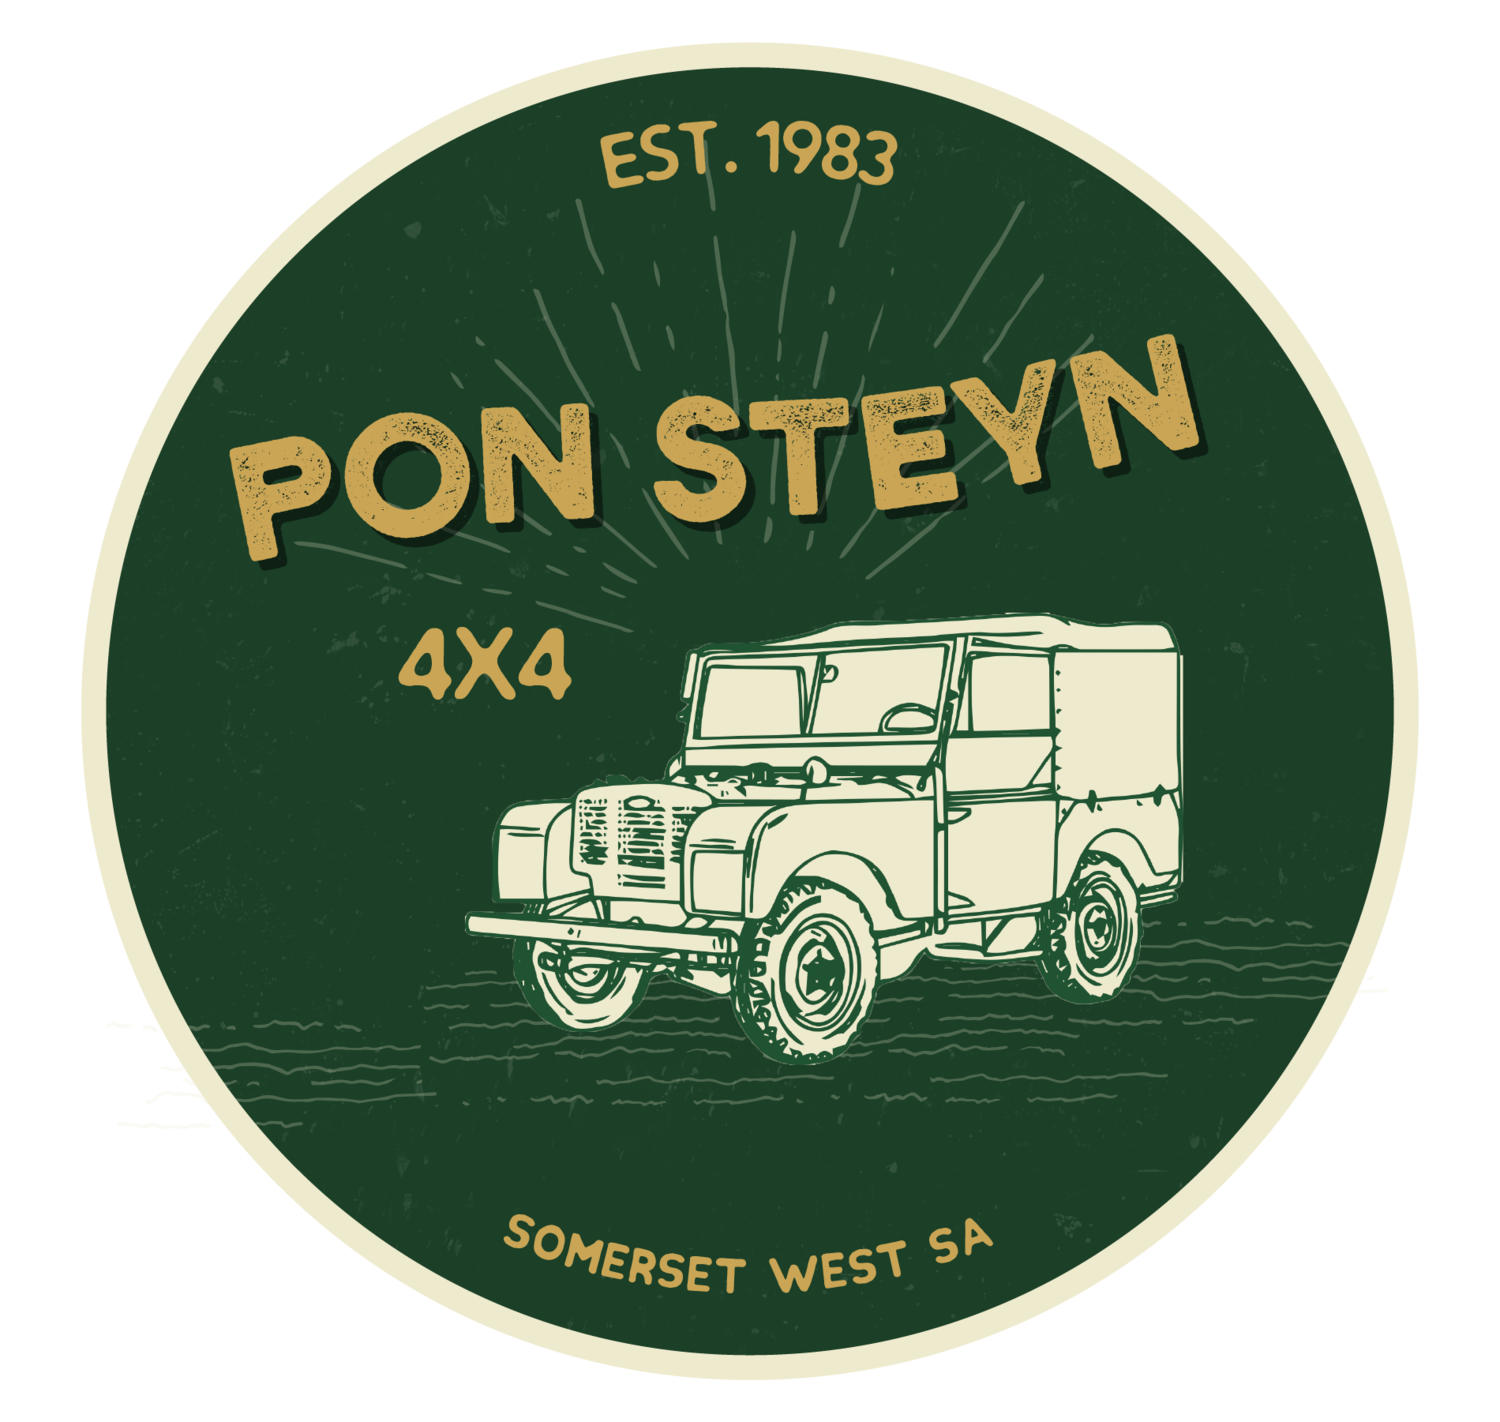 Pon Steyn 4x4